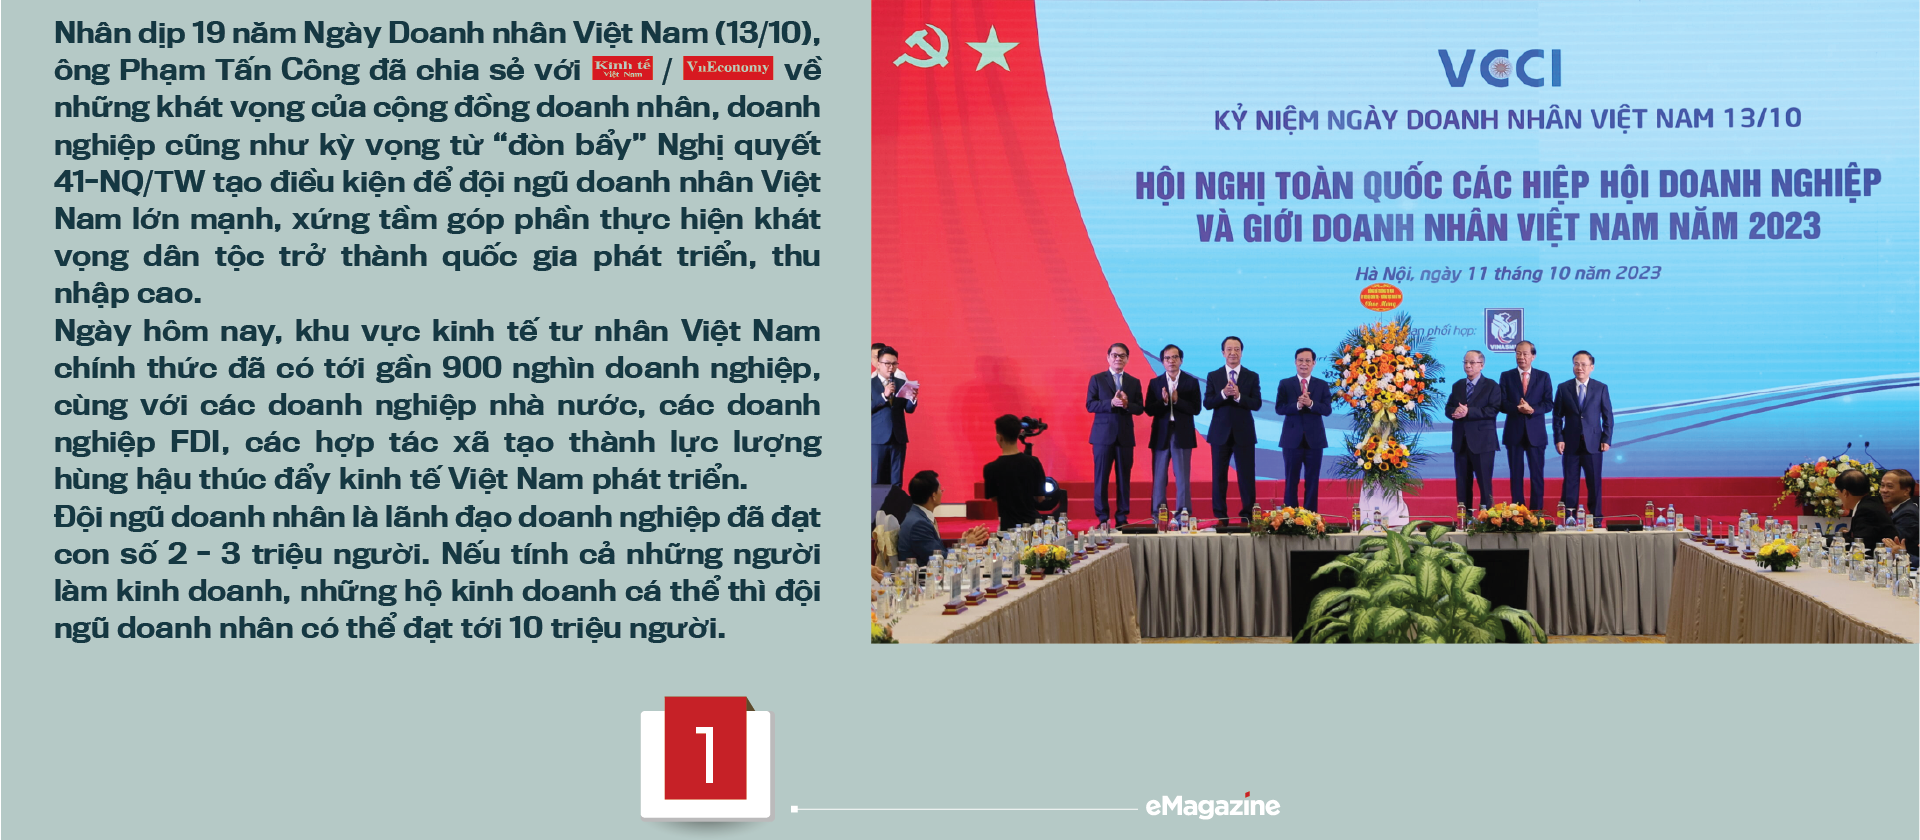 Nghị quyết 41: “Điểm tựa” phát triển doanh nhân Việt Nam trong thời kỳ mới - Ảnh 2